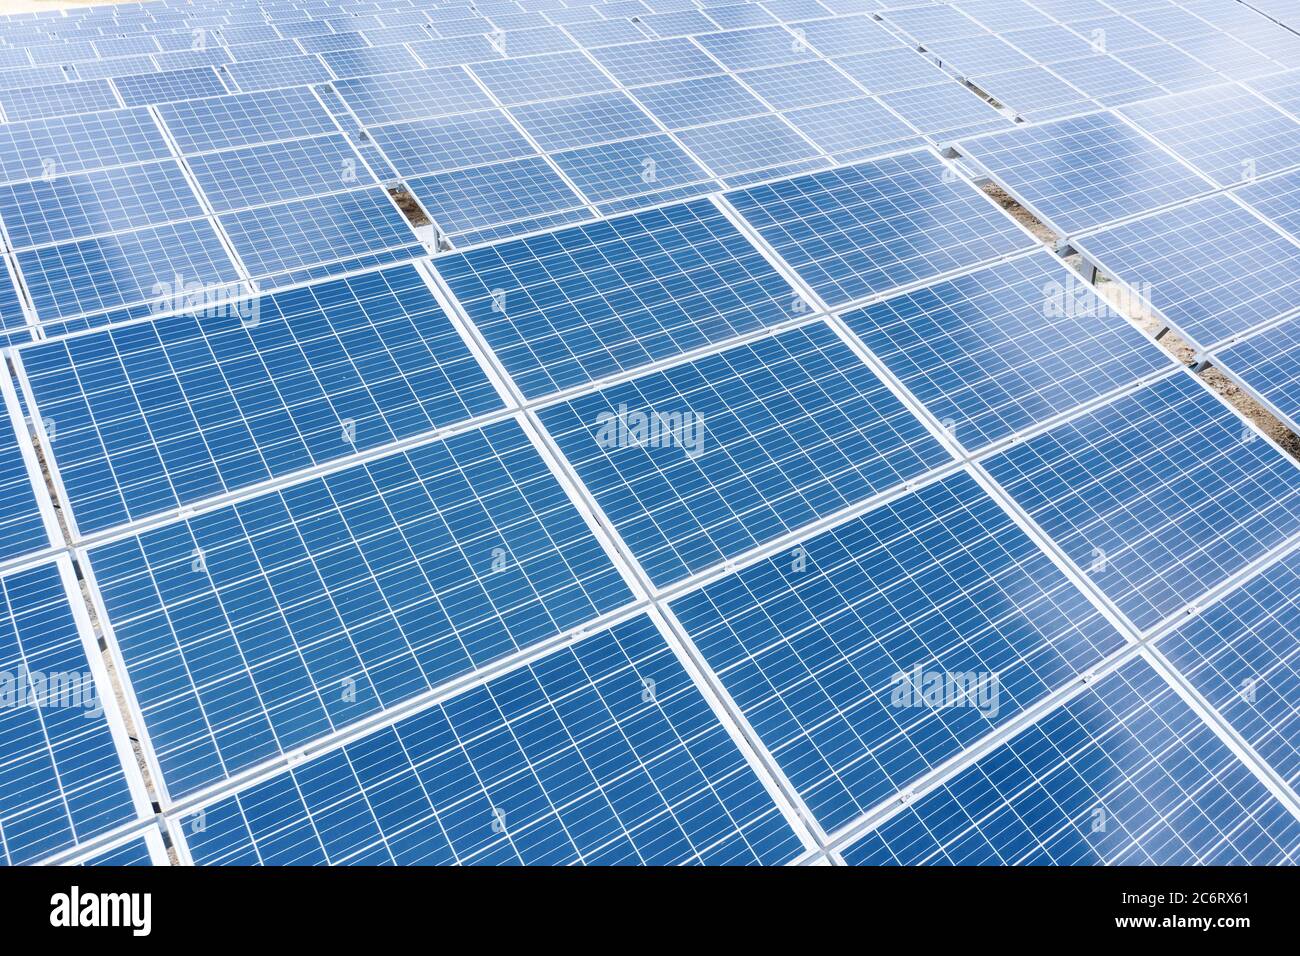 Vue rapprochée en plan des panneaux d'énergie solaire. Concept d'énergie propre et renouvelable pour un écosystème durable. Photo de haute qualité Banque D'Images